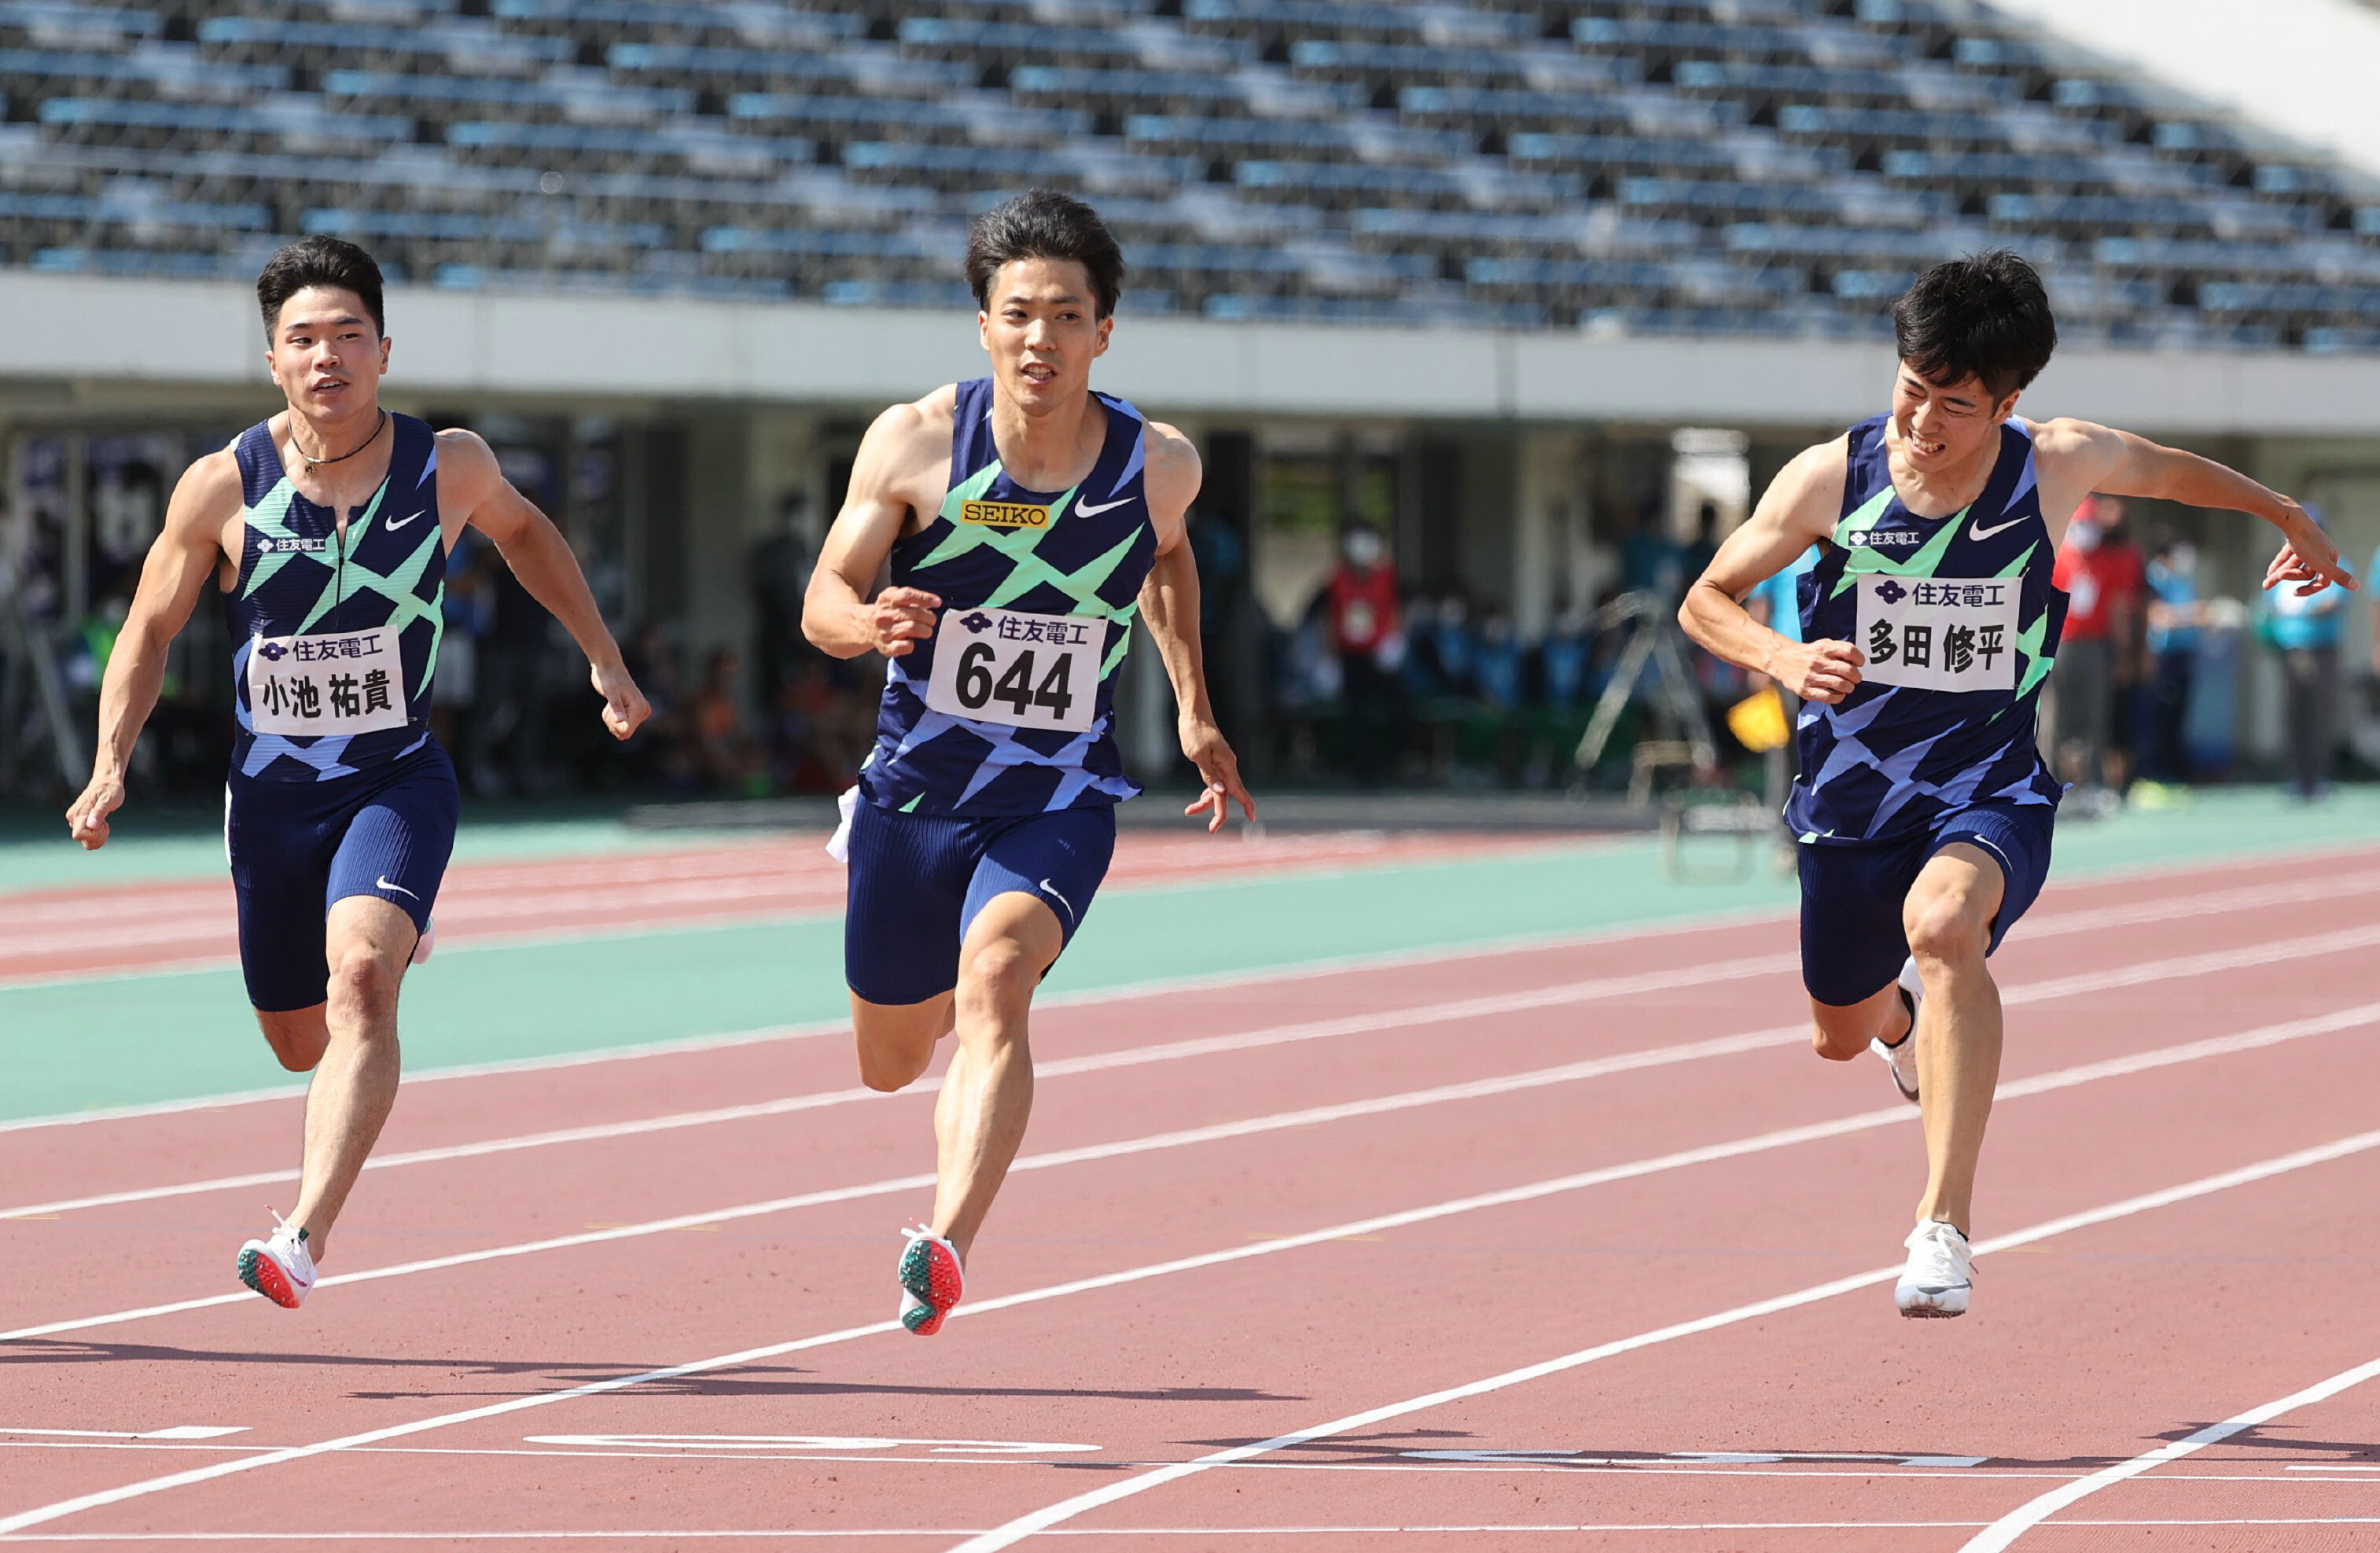 これが、100メートル9秒95の走りだ。陸上の山縣亮太選手が日本新記録 